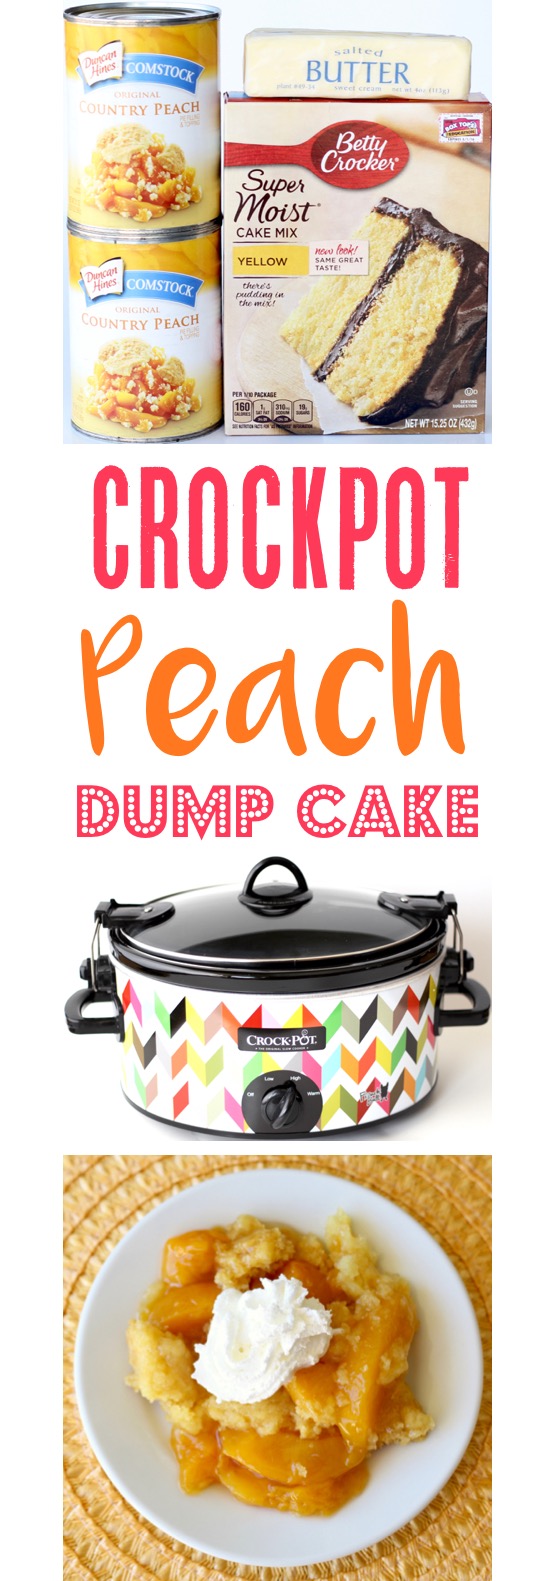 Crockpot Peach Dump Cake Recipe Easy | TheFrugalGirls.com